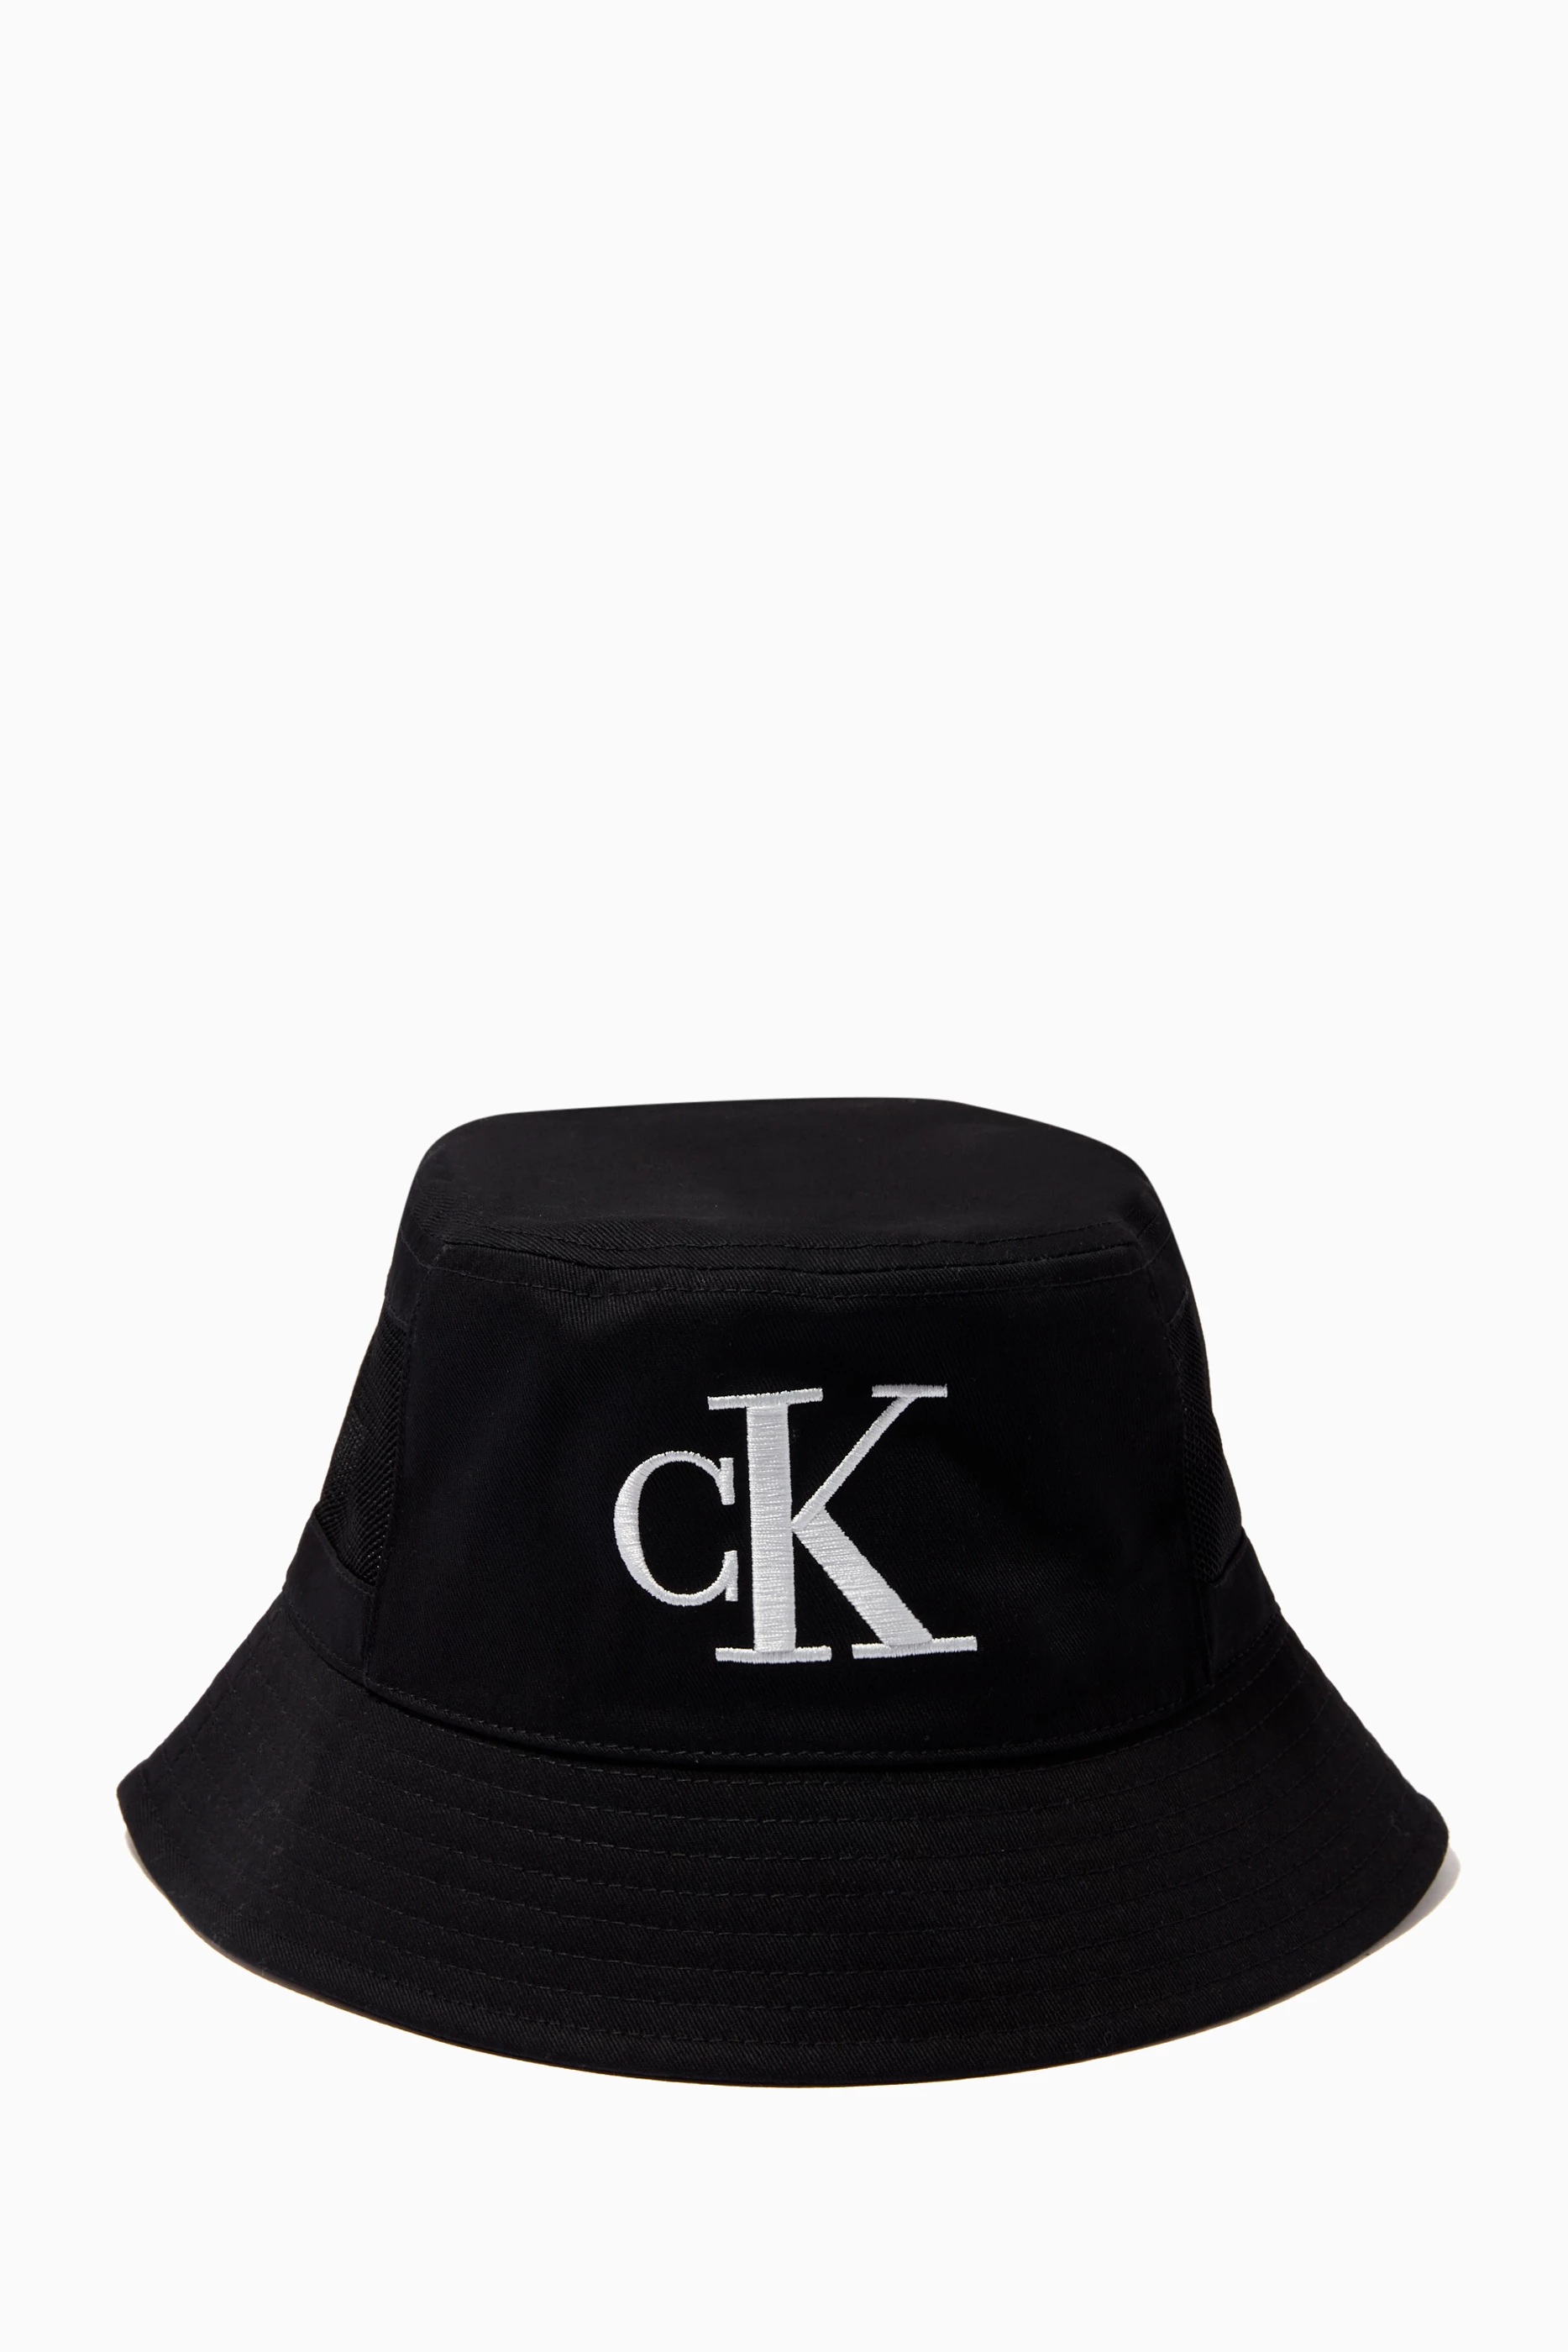 Calvin Klein Men's Embroidered Monogram Logo Twill Bucket Hat - Black